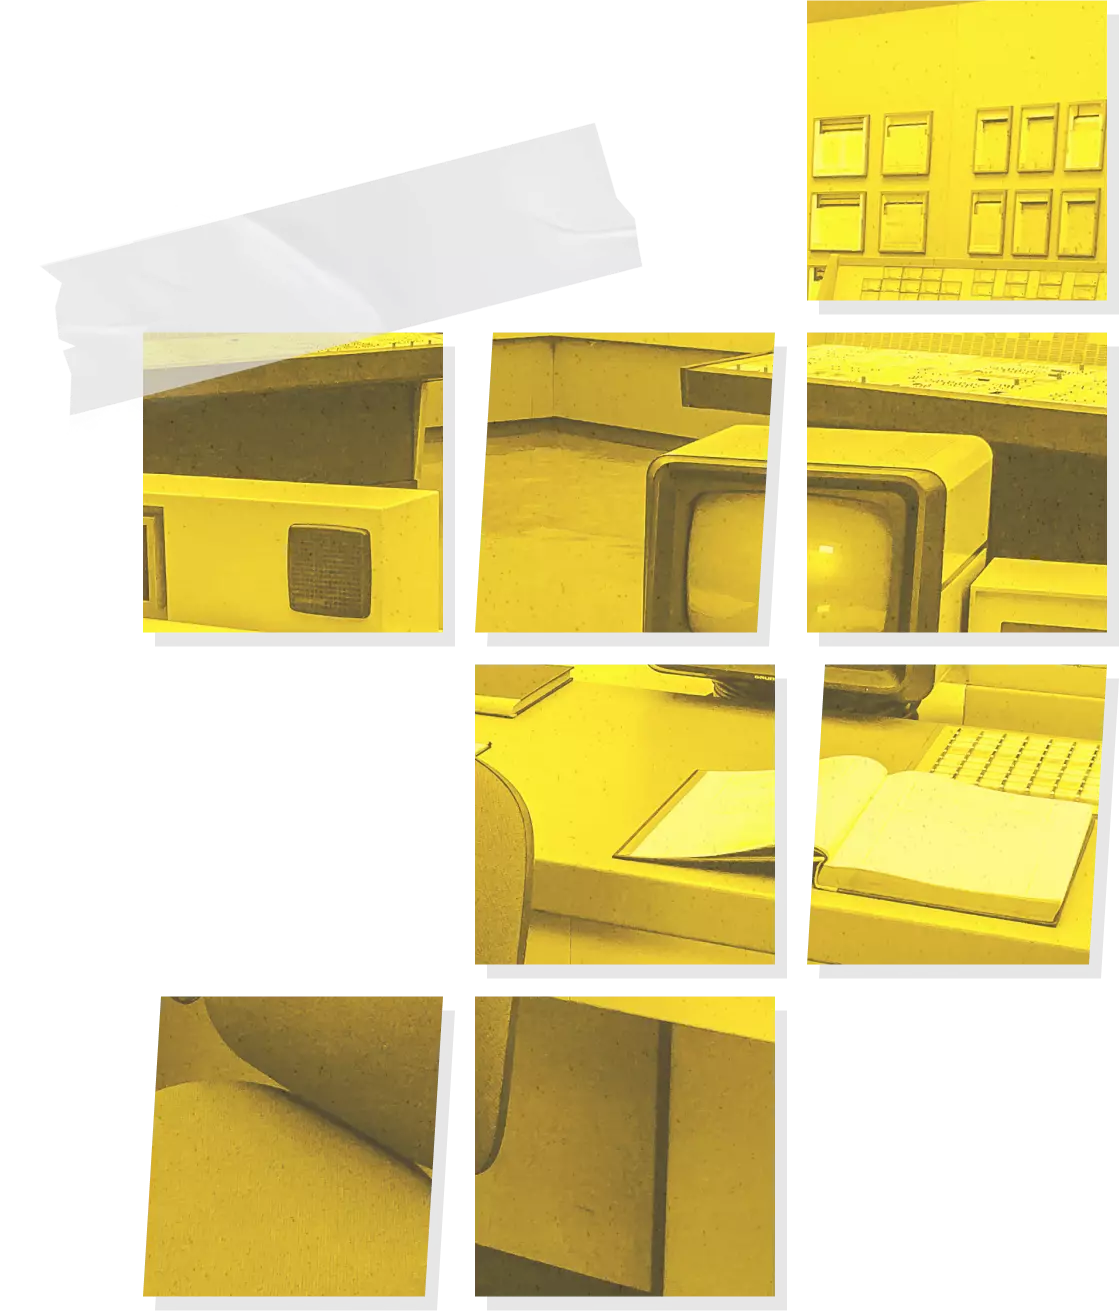 Image d'un bureau avec la présence de matériels informatiques. Découpé en grands carré de pixel jaune, adapté à la charte graphique de Branché